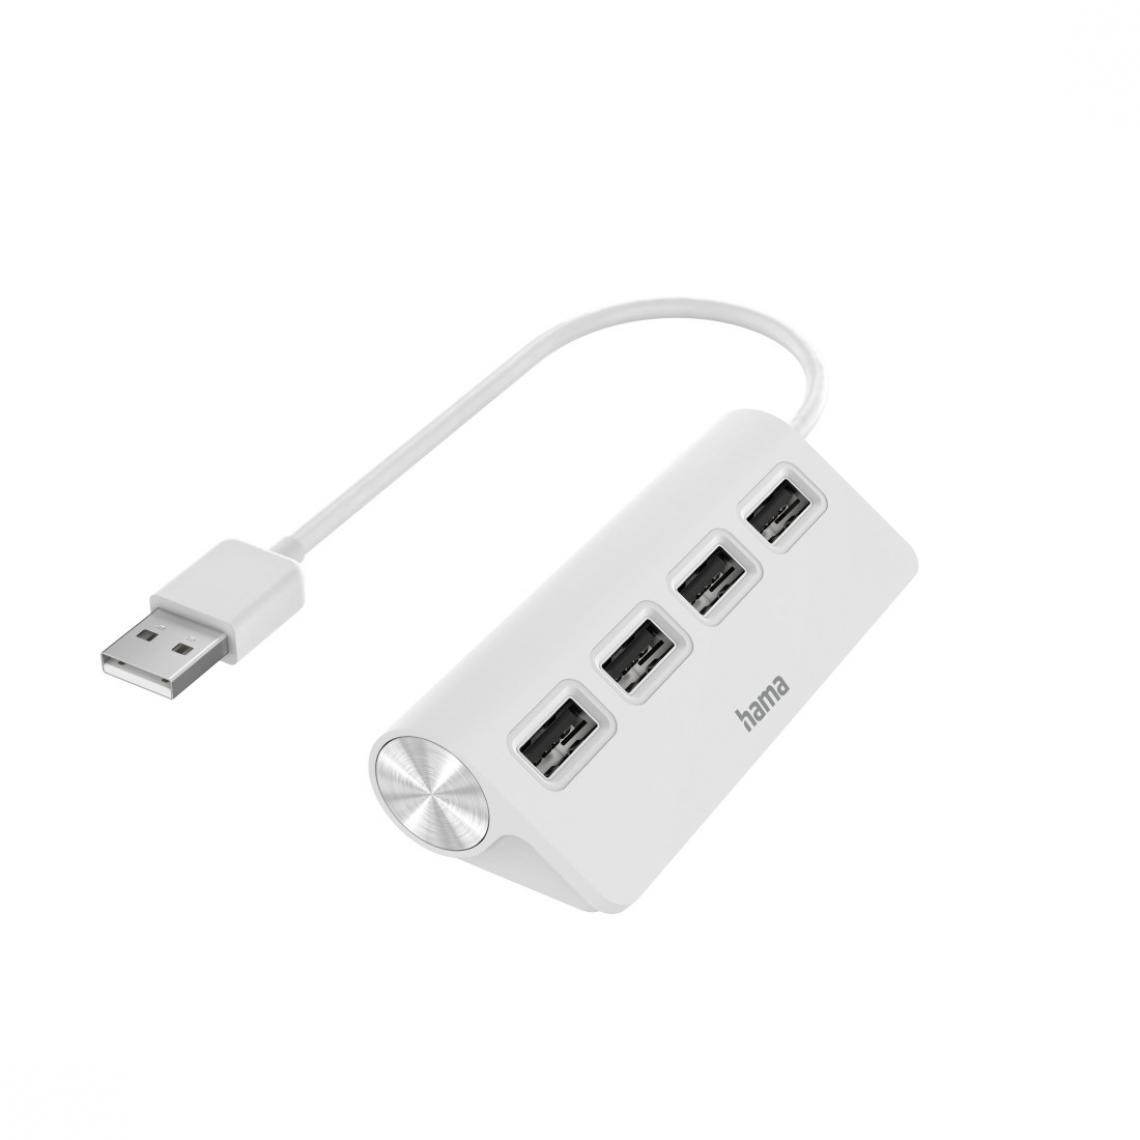 Hama - Hub USB, 4 ports, USB 2.0, 480 Mbit/s, blanc - Hub